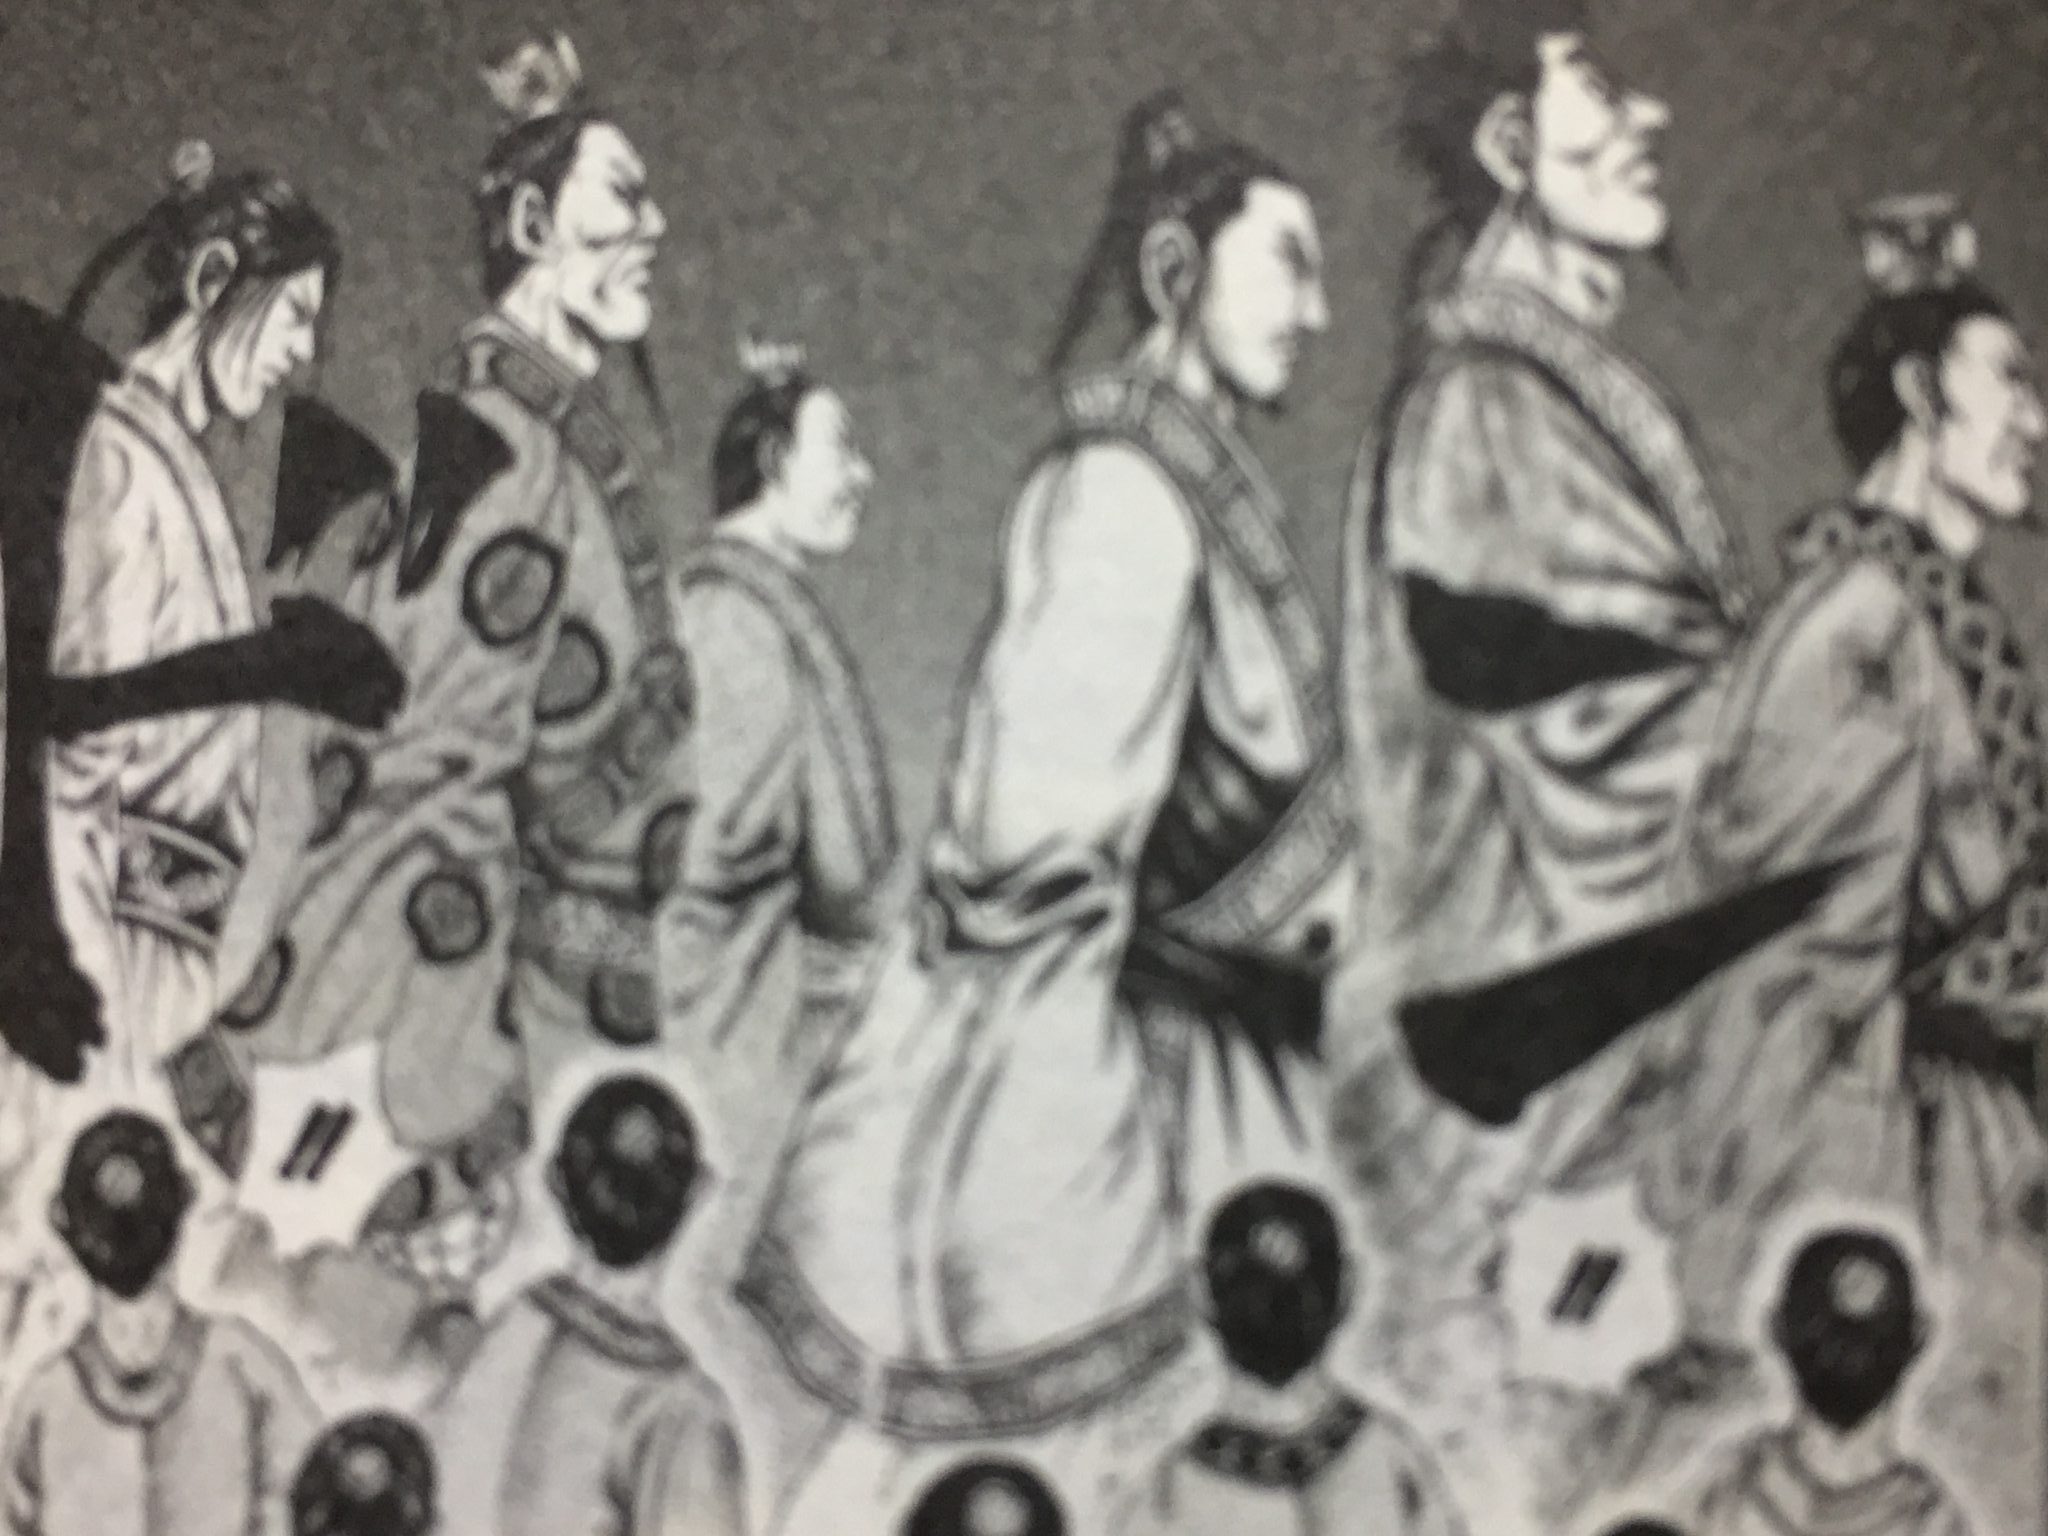 呂氏四柱の史実の実績は 三国志 キングダム 春秋戦国時代 と史実と考察の歴史書